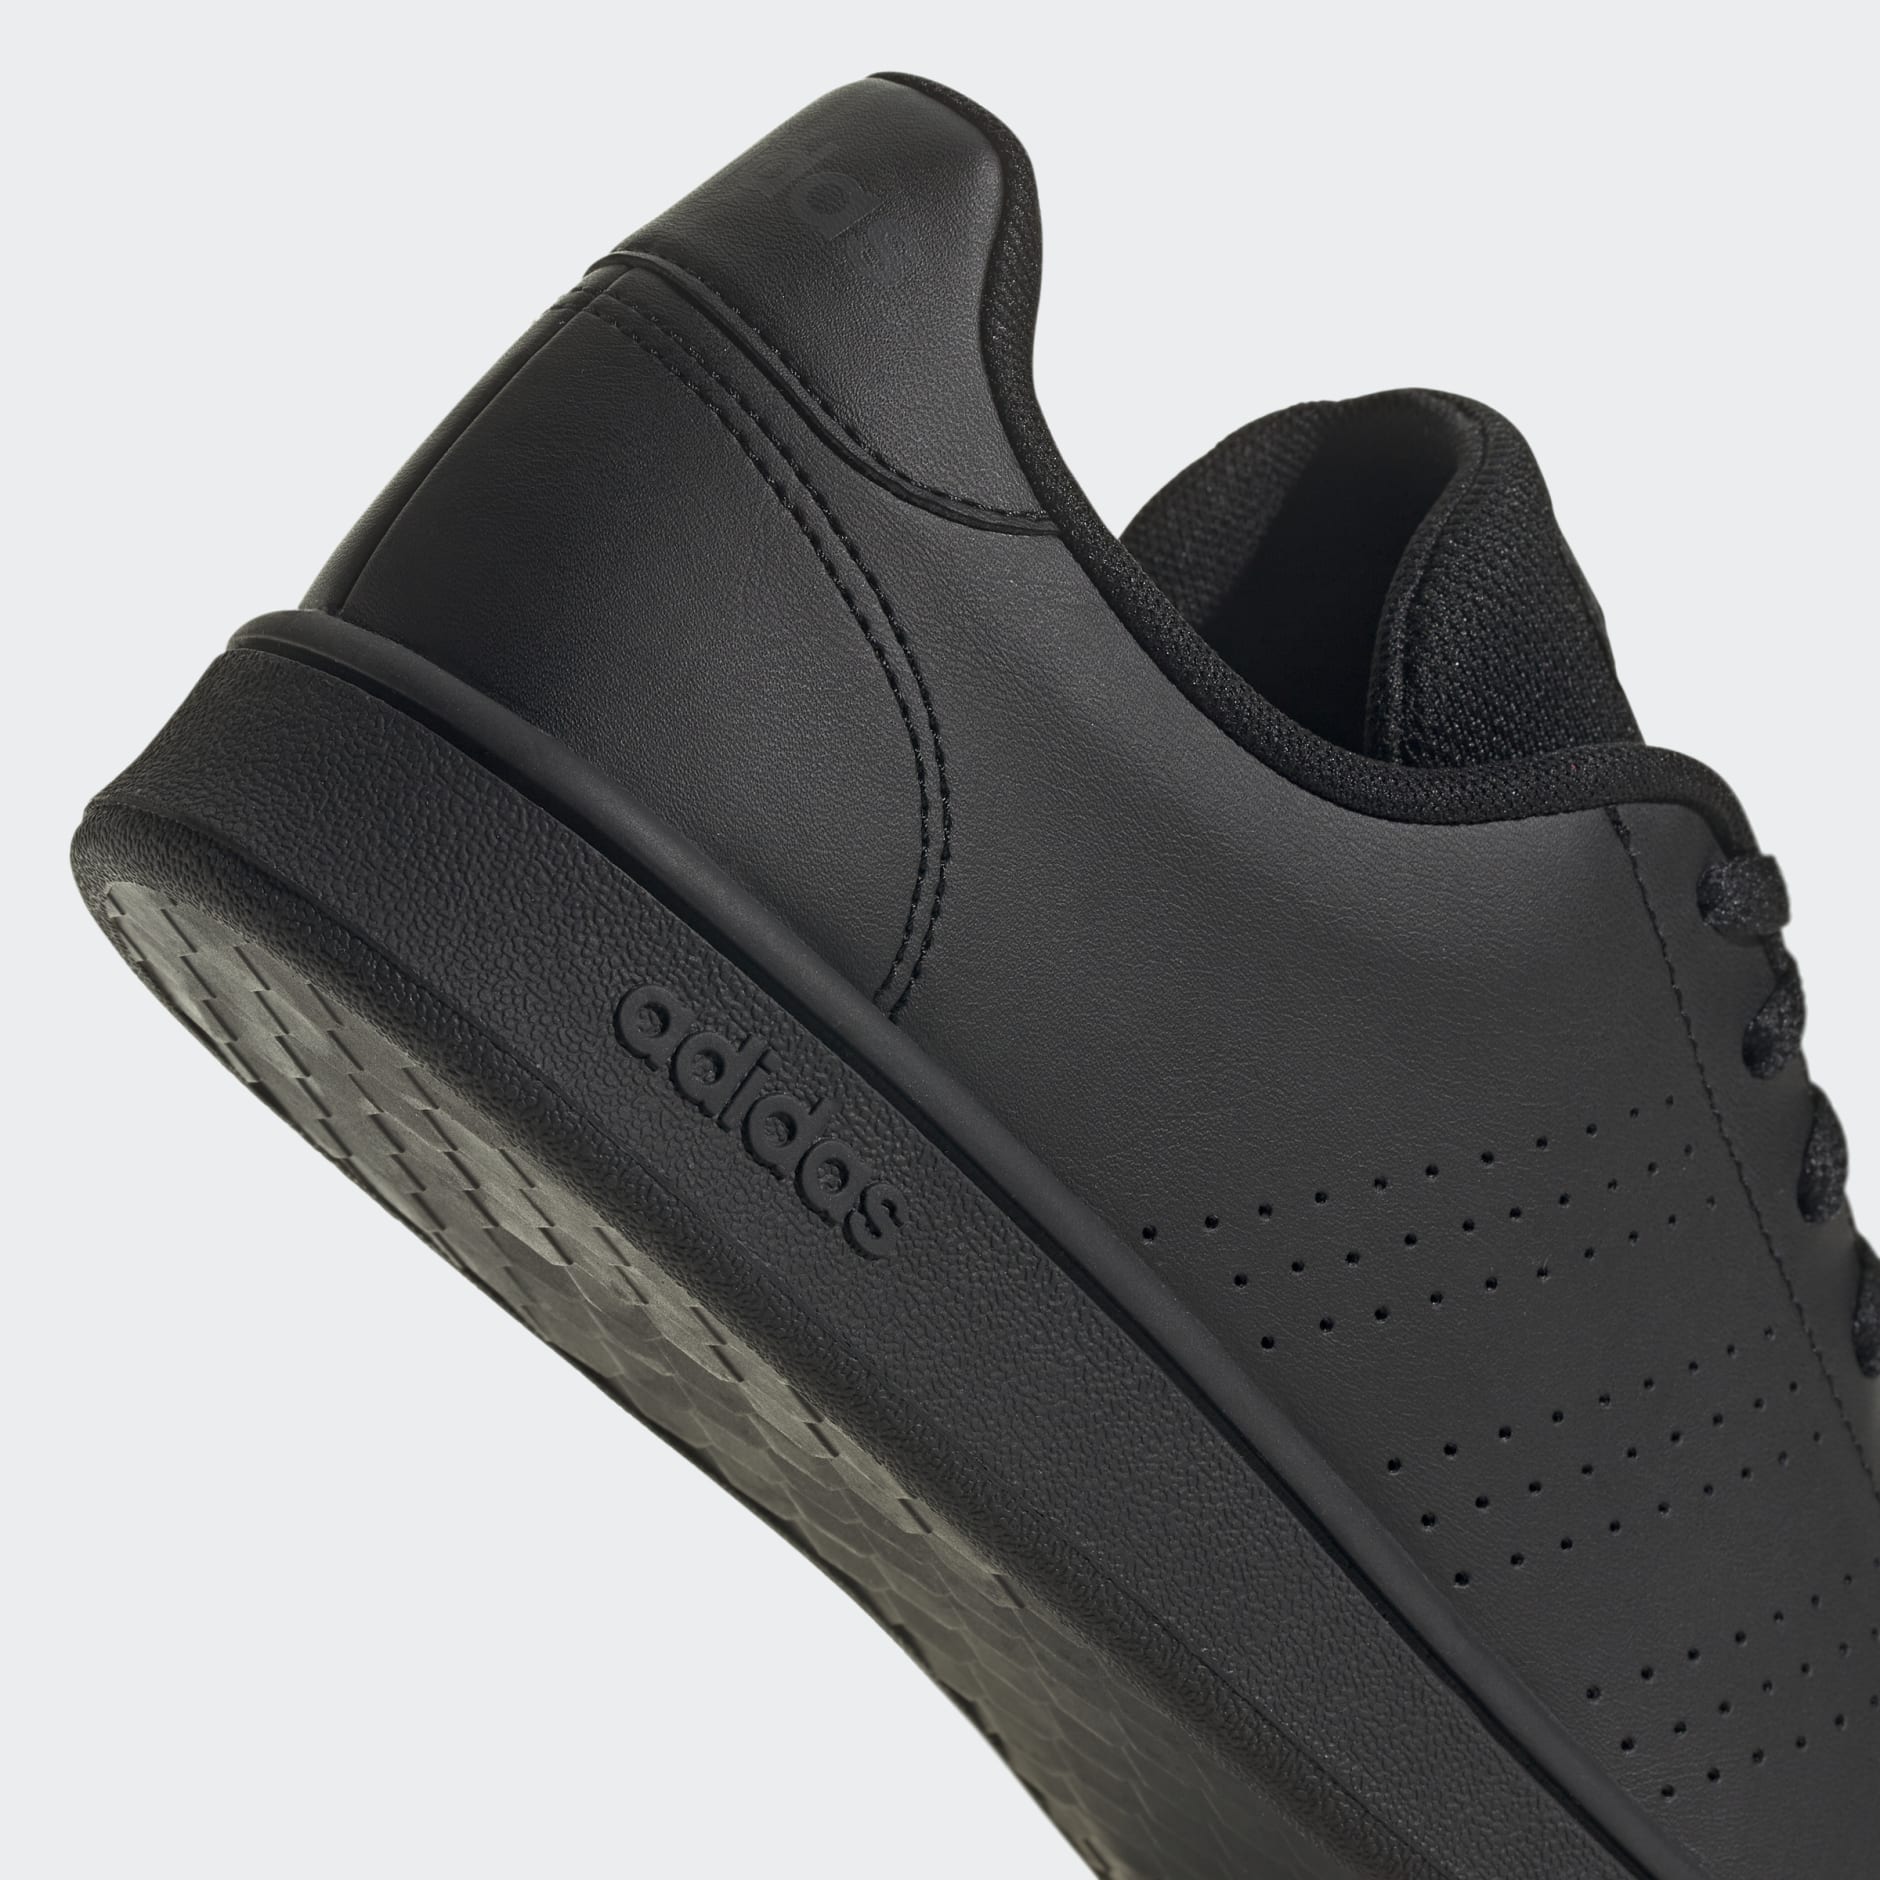 Adidas Women Neo CF Advantage Sneakers Shoes White Black Stripe Size 7.5 US  | eBay